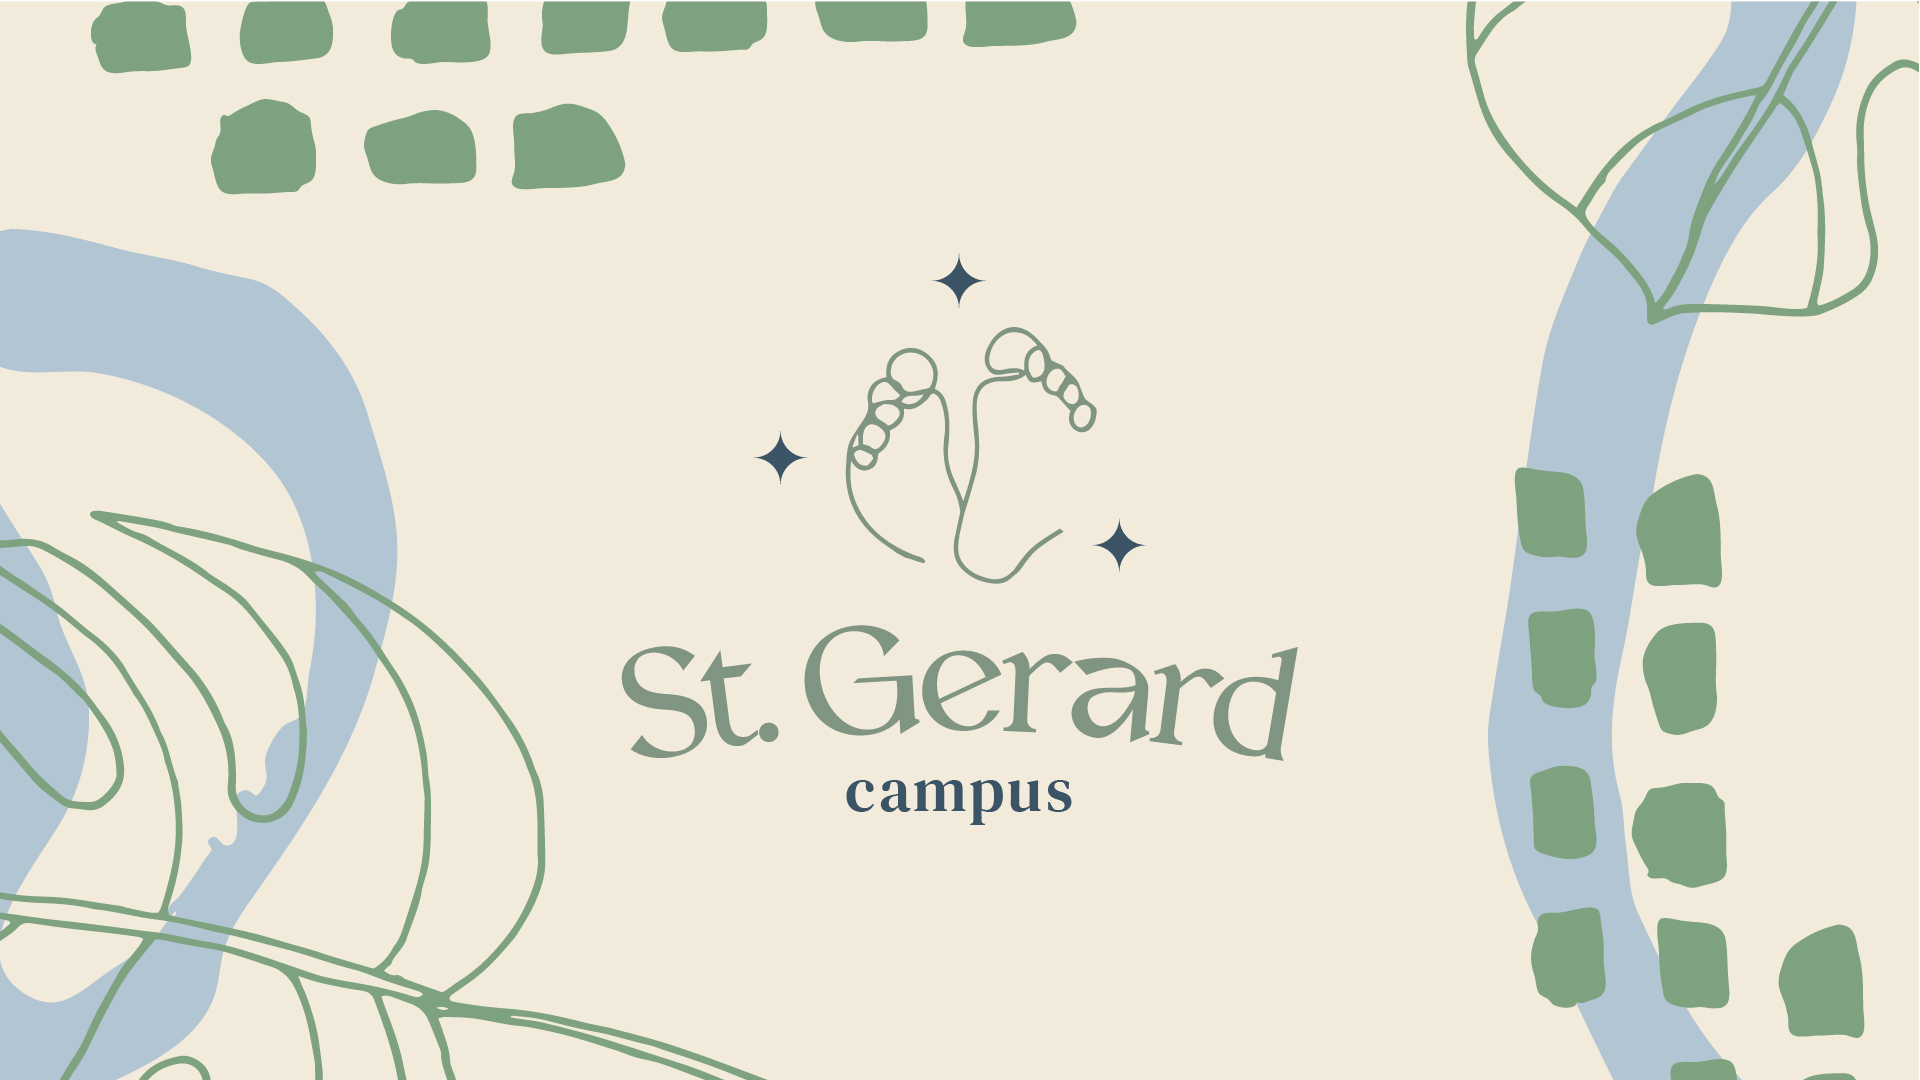 St. Gerard Campus